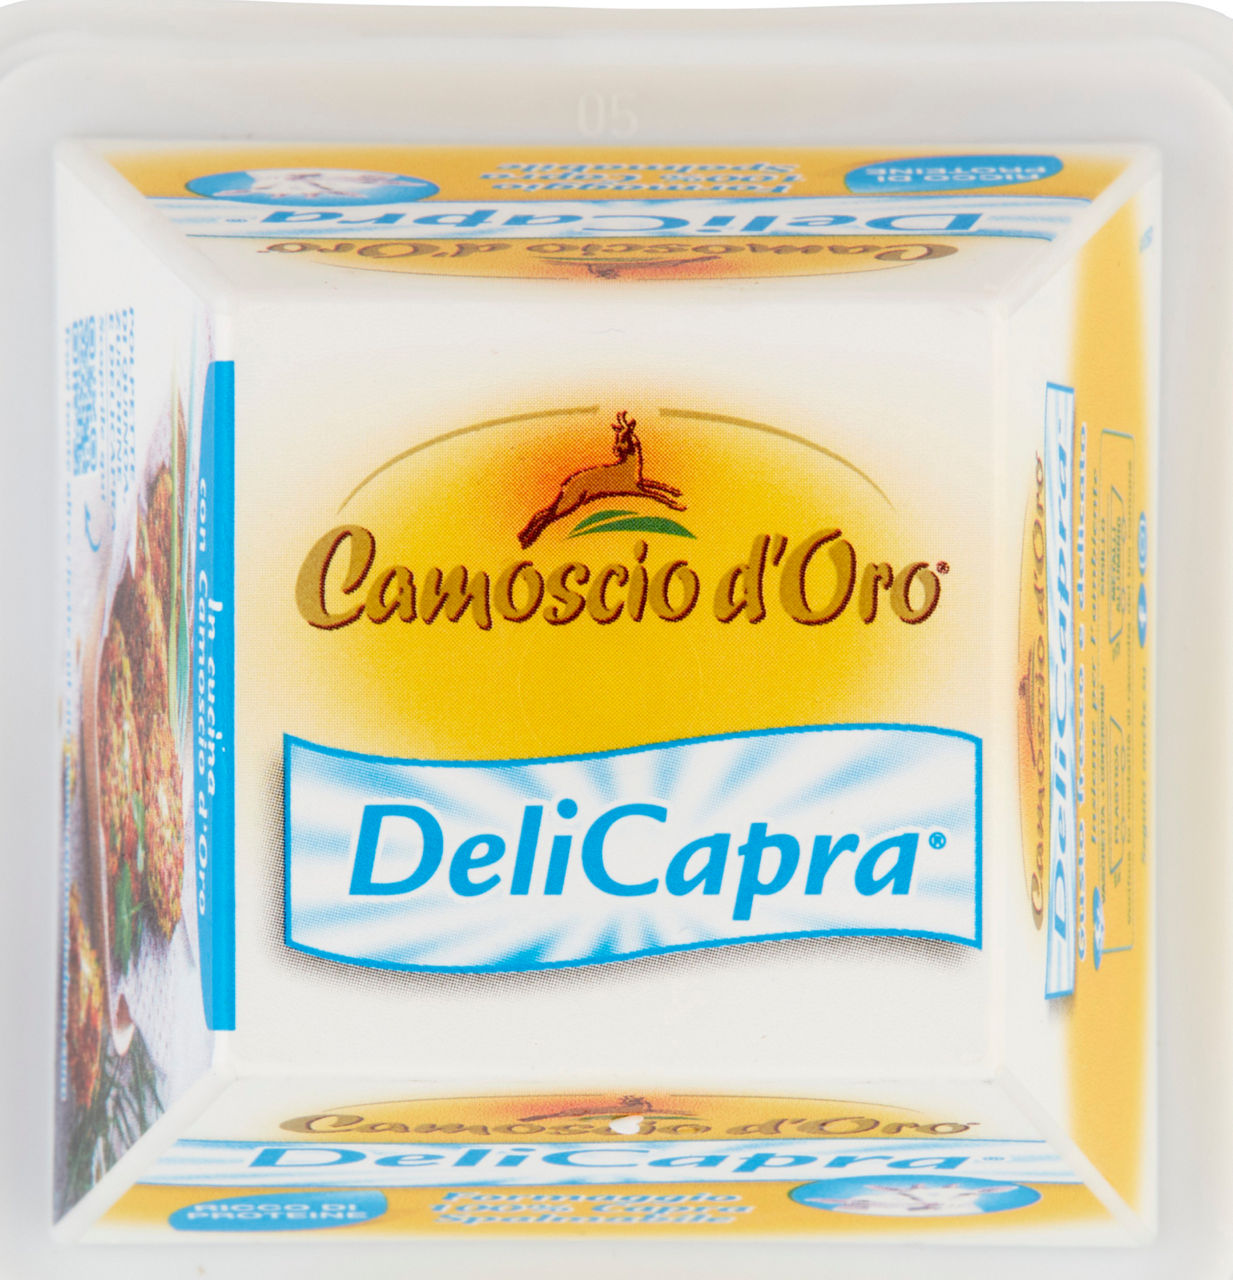 CAMOSCIO D'ORO DELICAPRA SPALMABILE SAVENCIA VASCHETTA 150 G - 8